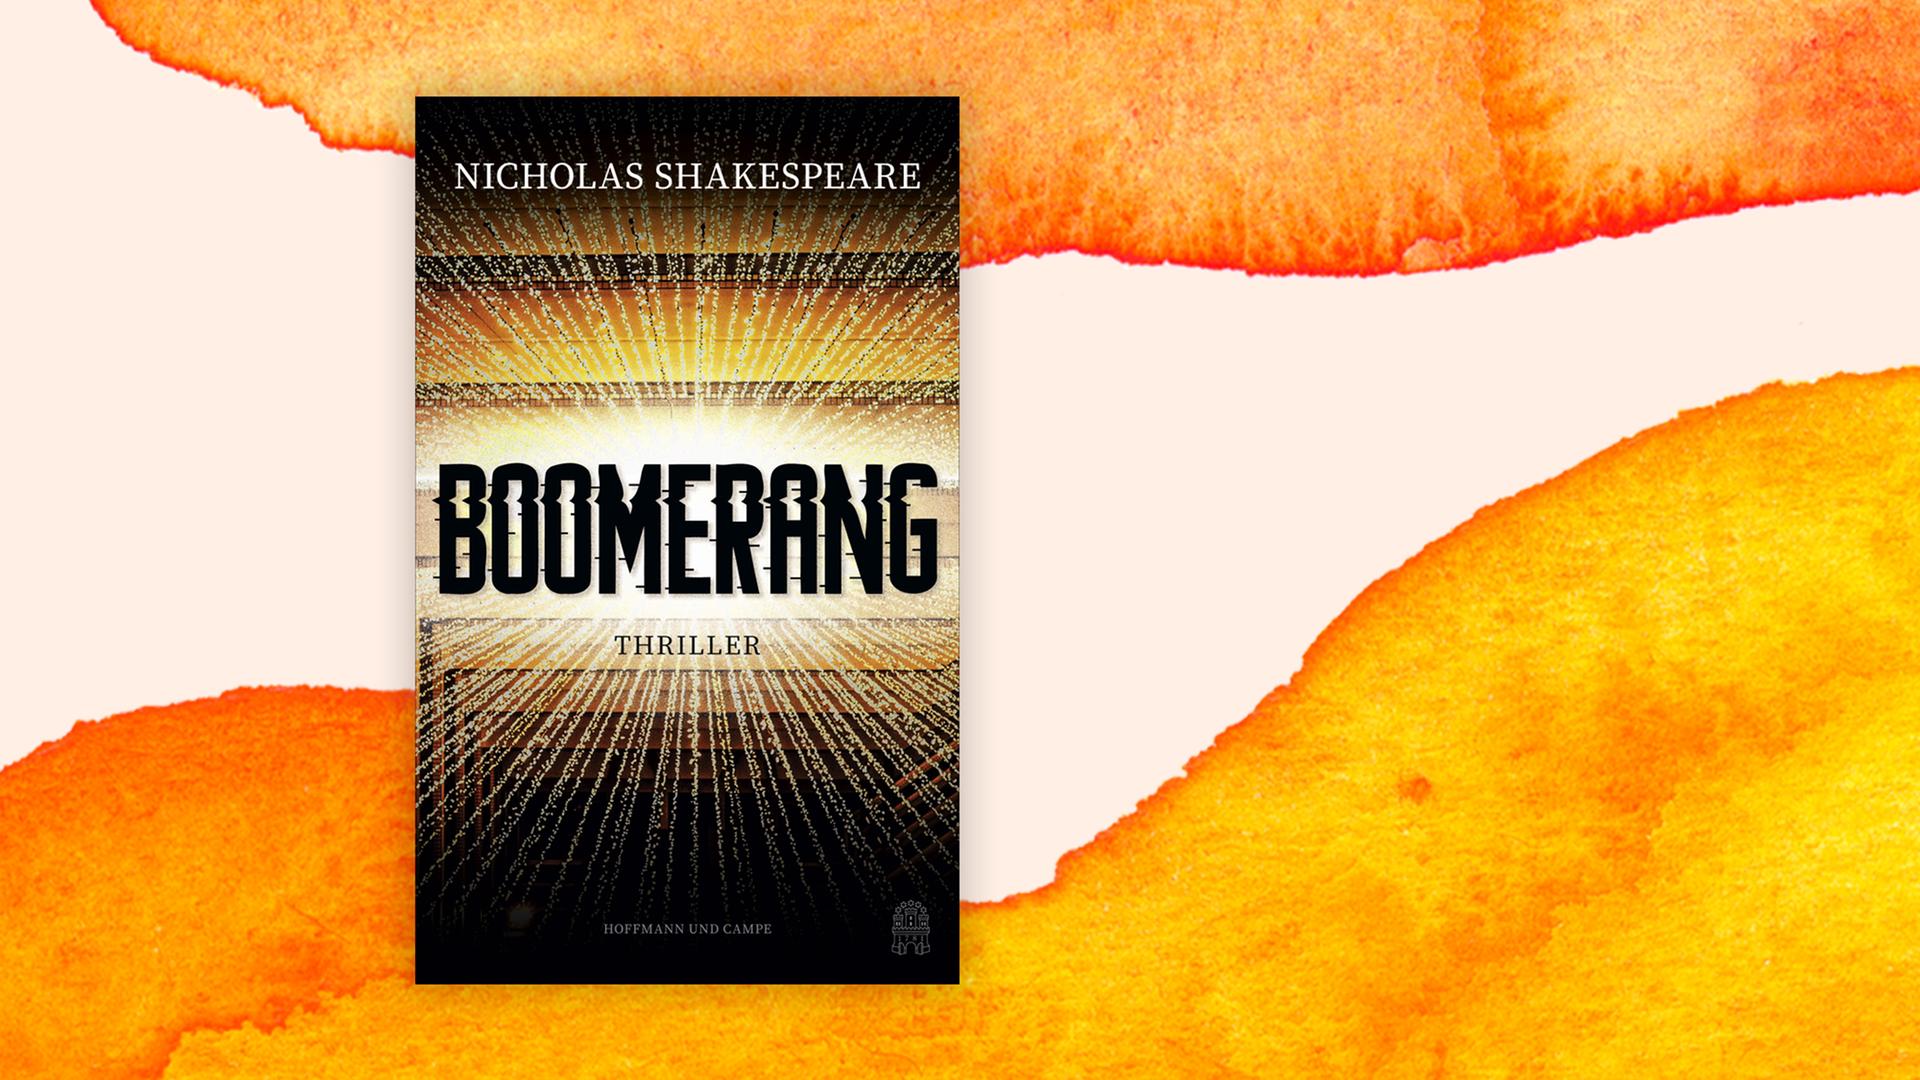 Das Cover von Nicholas Shakespeares "Boomerang" auf orangefarbenem Hintergrund.